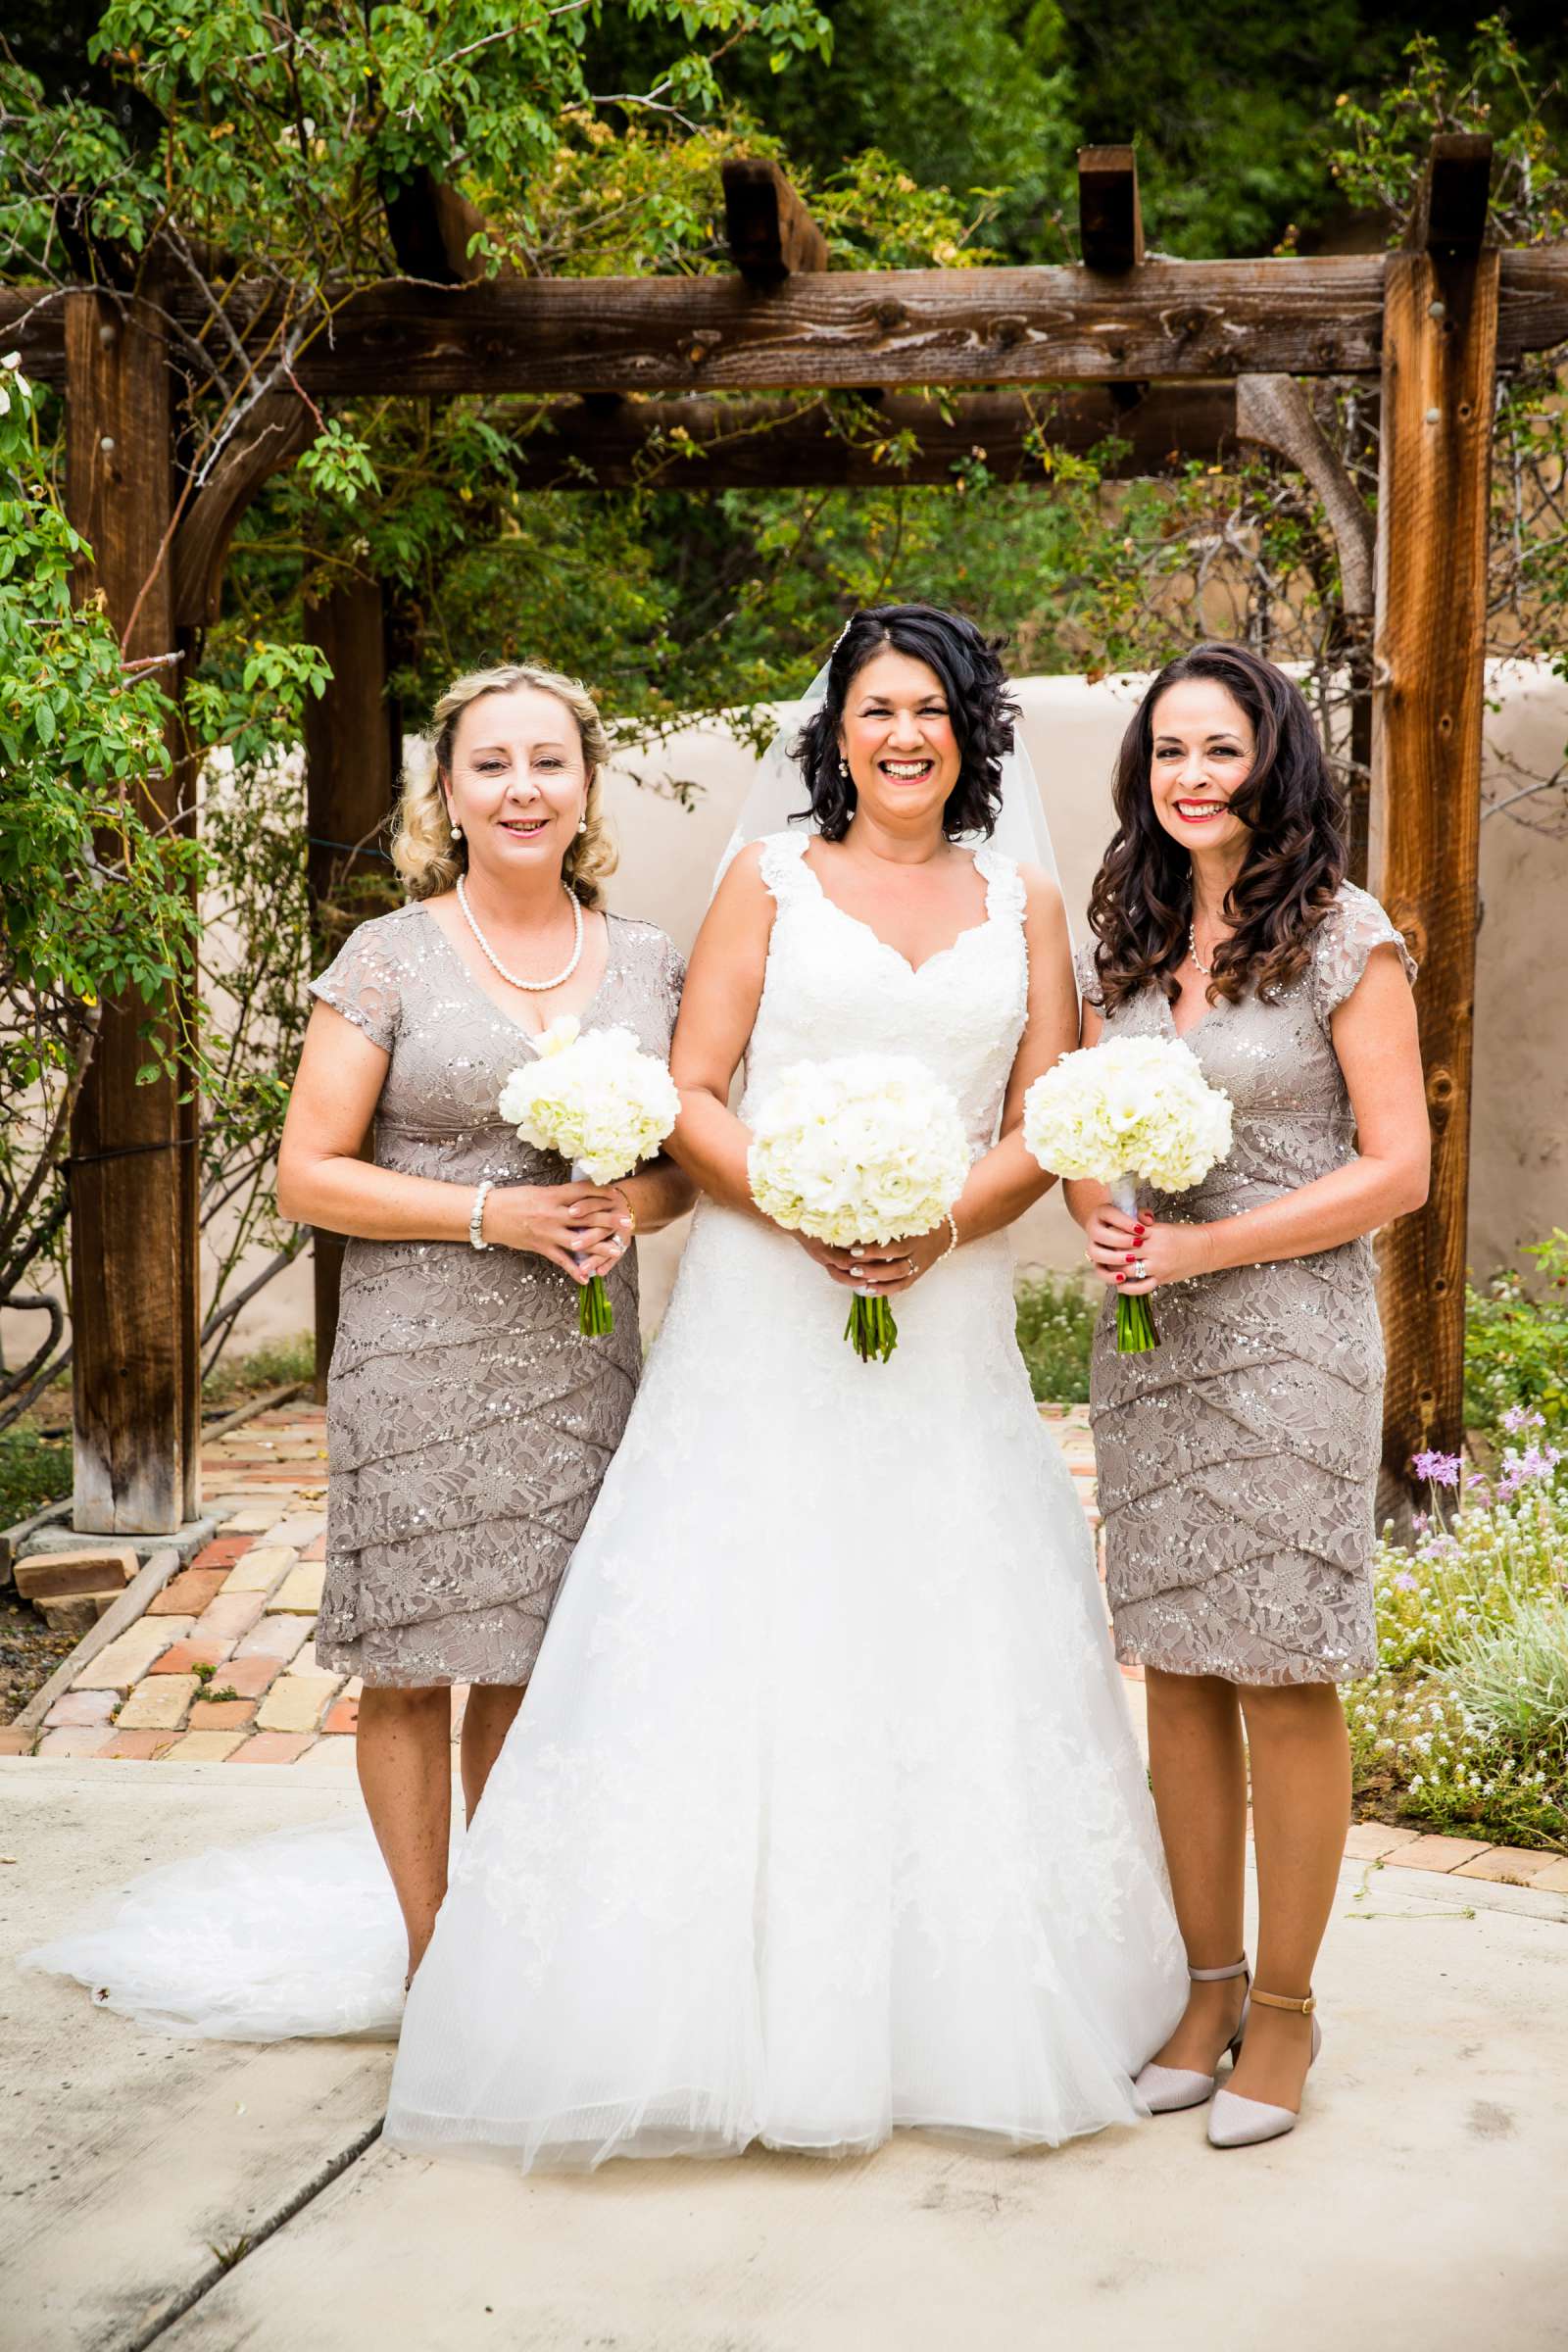 Rancho Buena Vista Adobe Wedding, Ellinor and Frank Wedding Photo #9 by True Photography